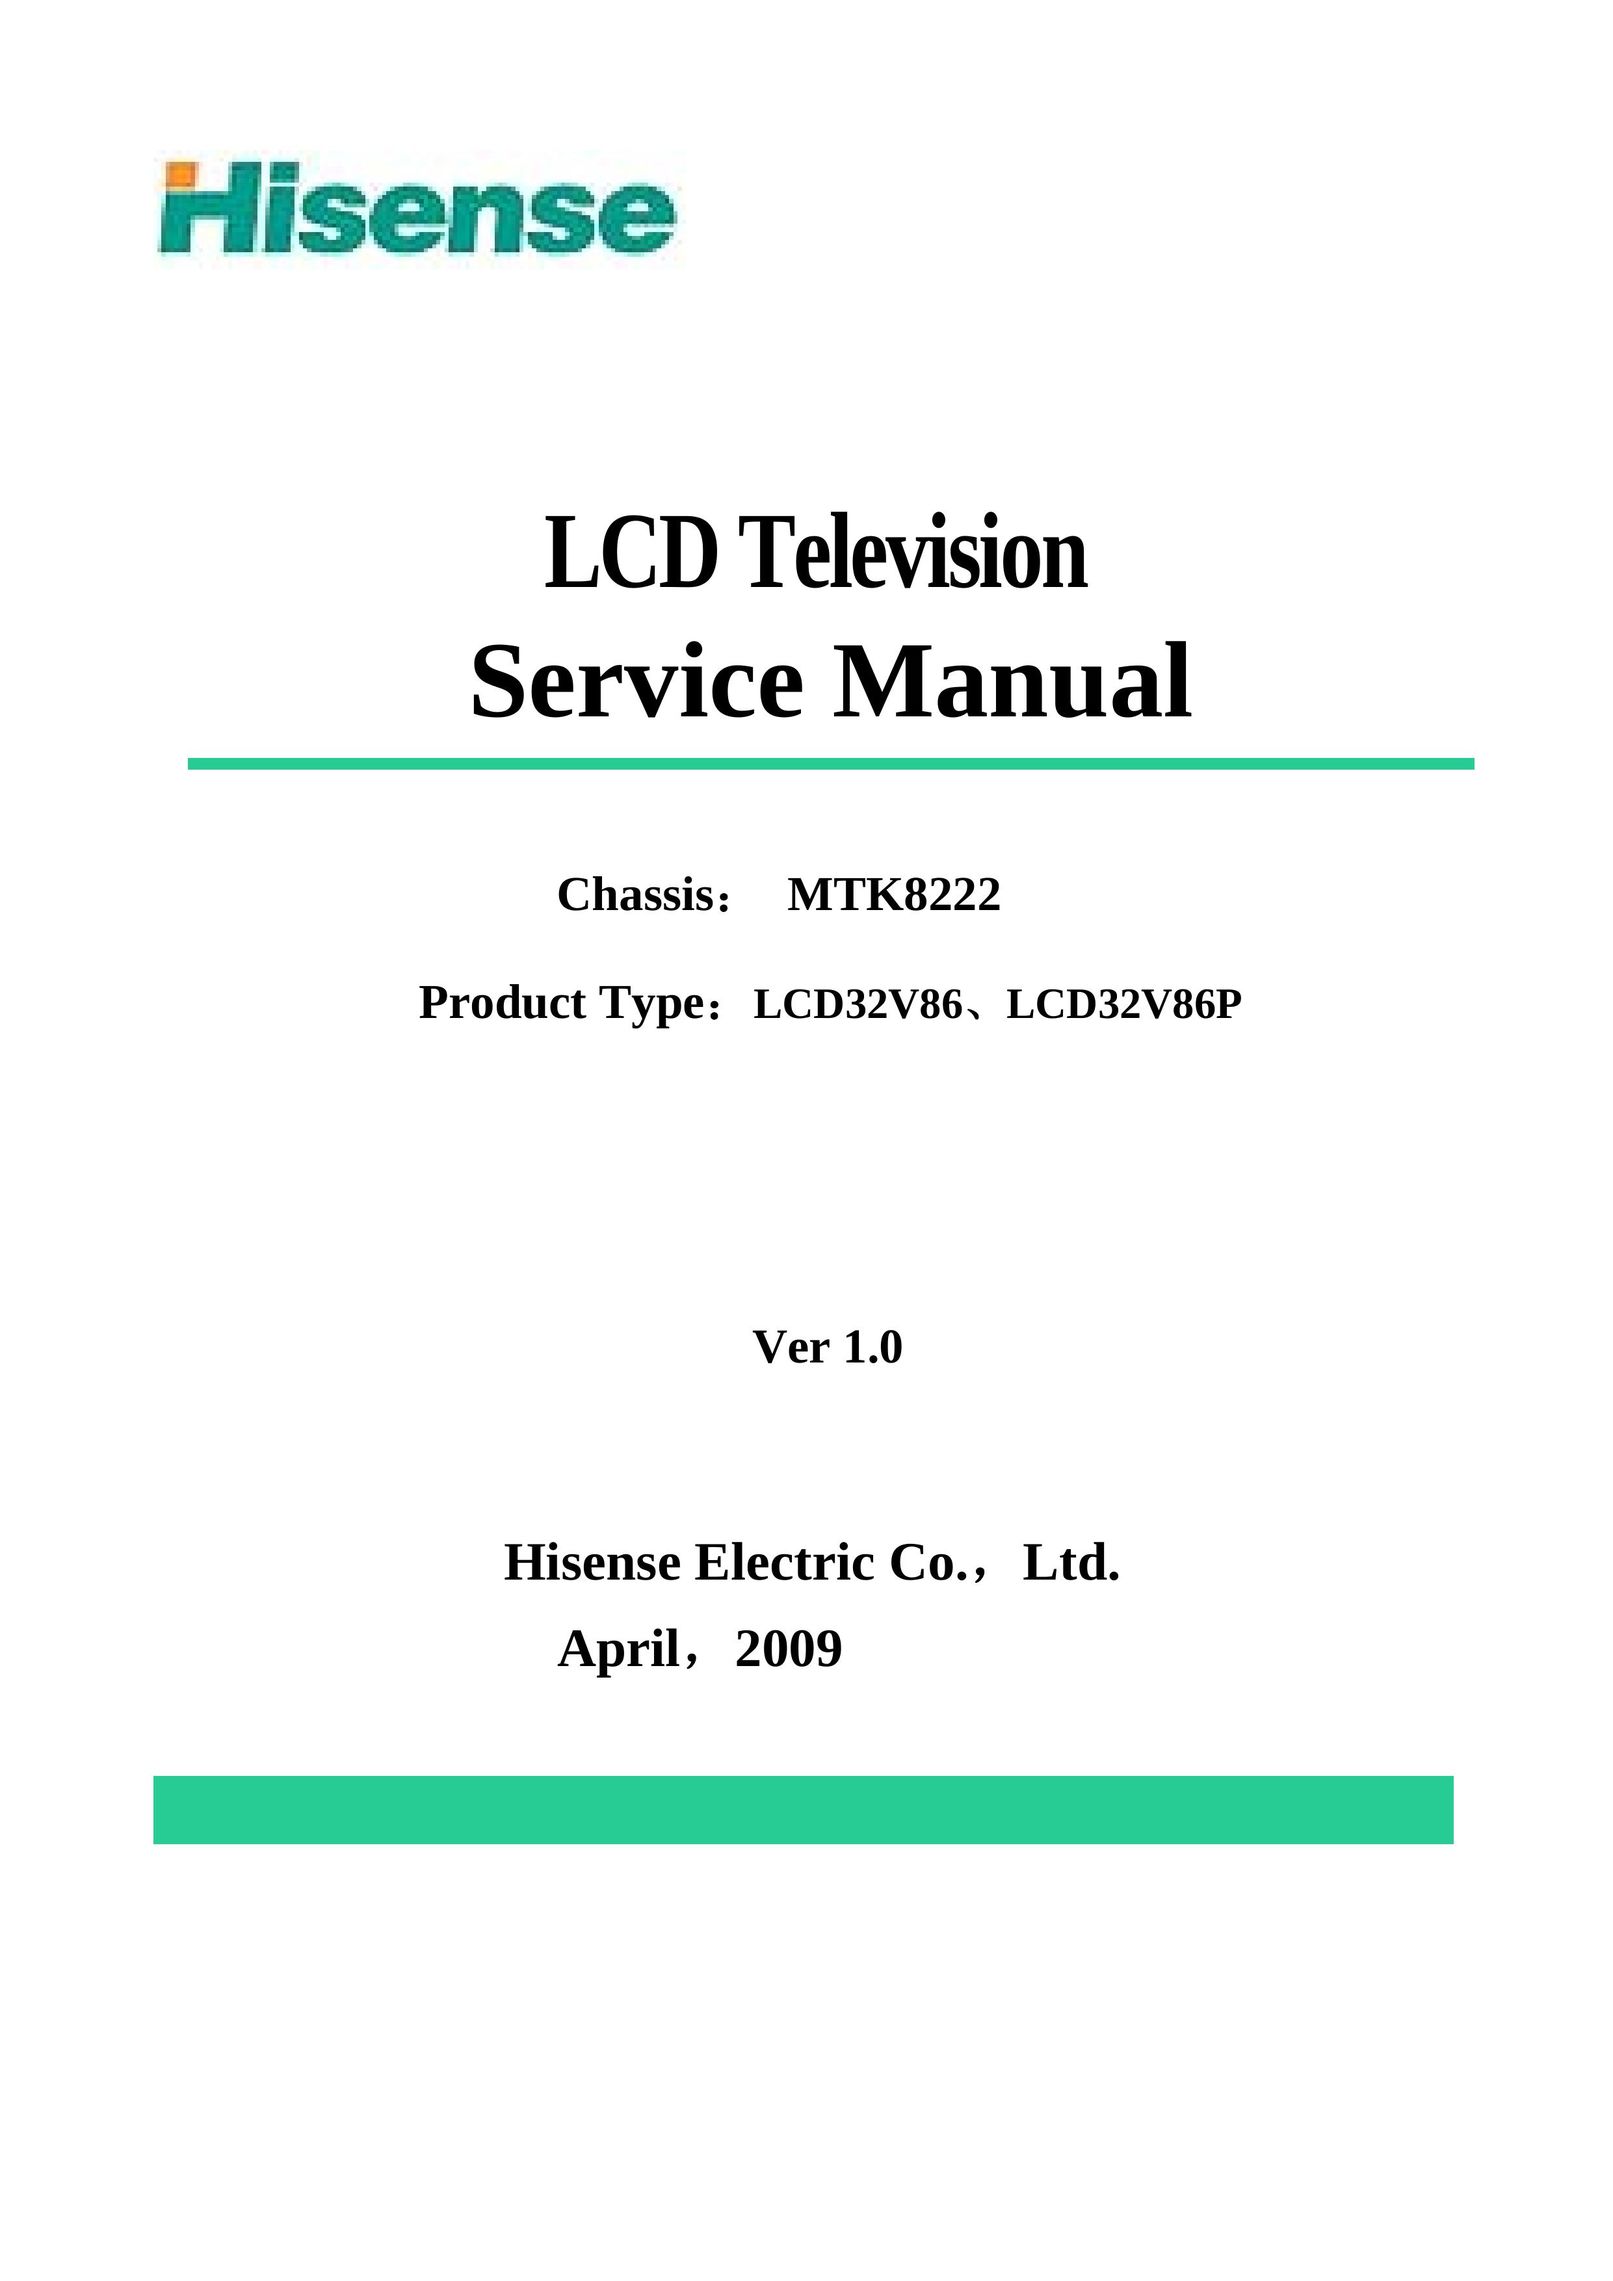 Hisense LCD32V86 Flat Panel Television User Manual